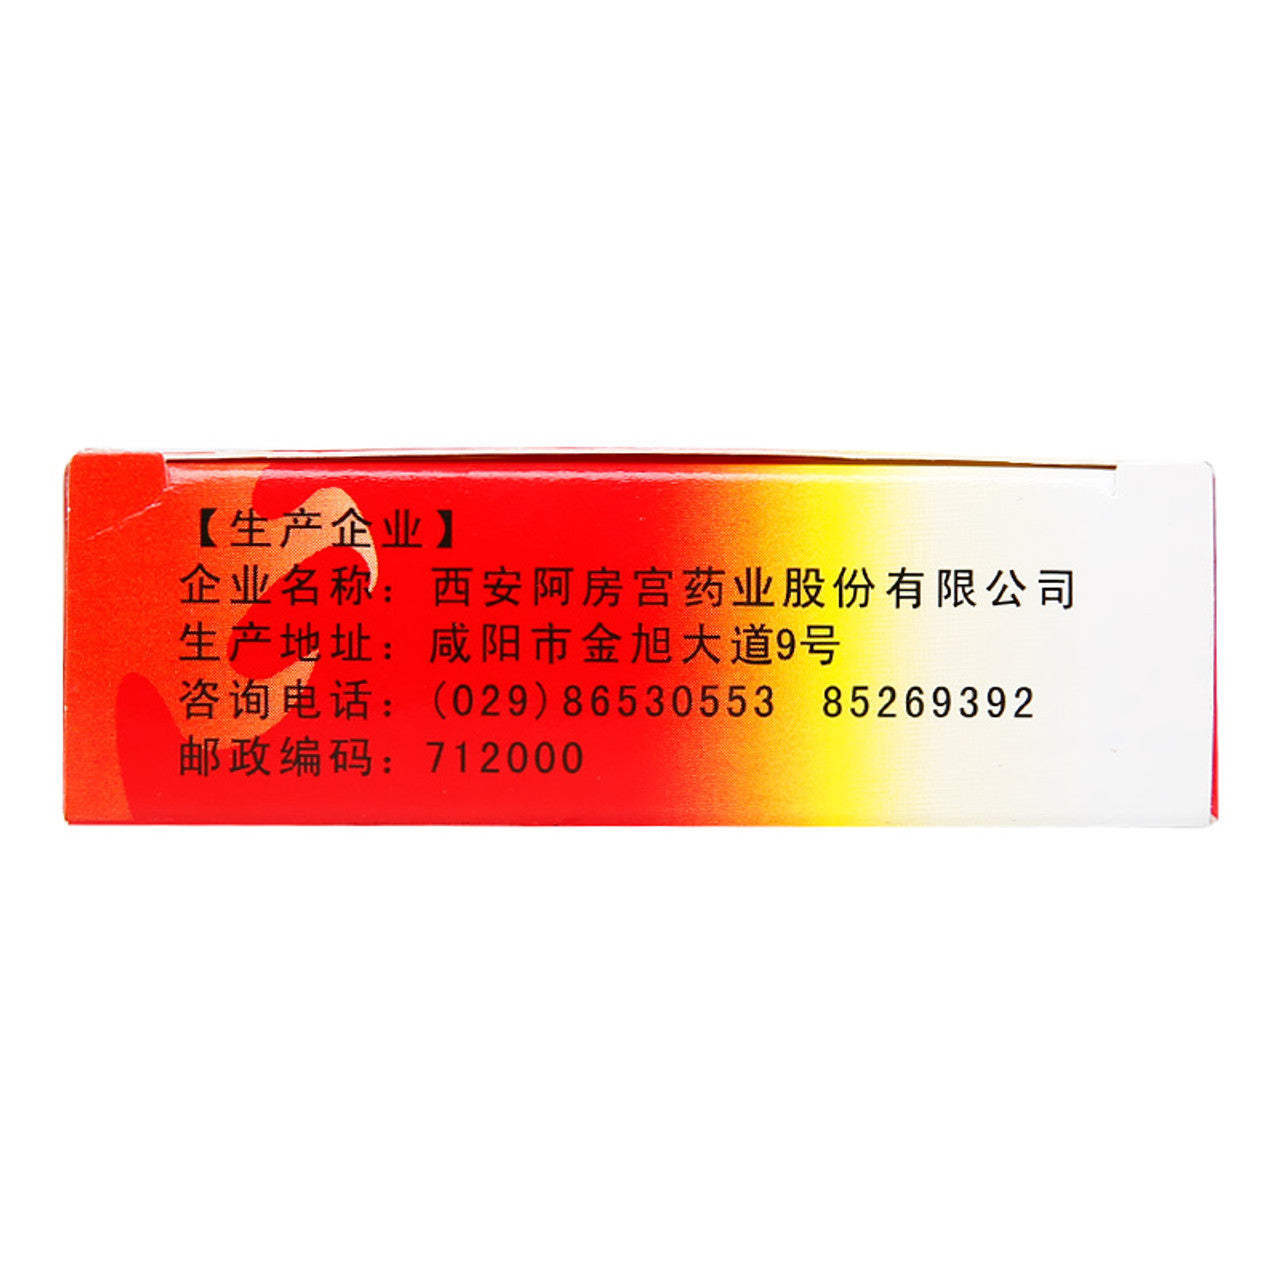 (0.33g*24 Capsules*5 boxes/lot). Yishenling Capsule or Yishenling Jiaonang for Tonifying The Kidney & Yang. Yi Shen Ling Jiao Nang